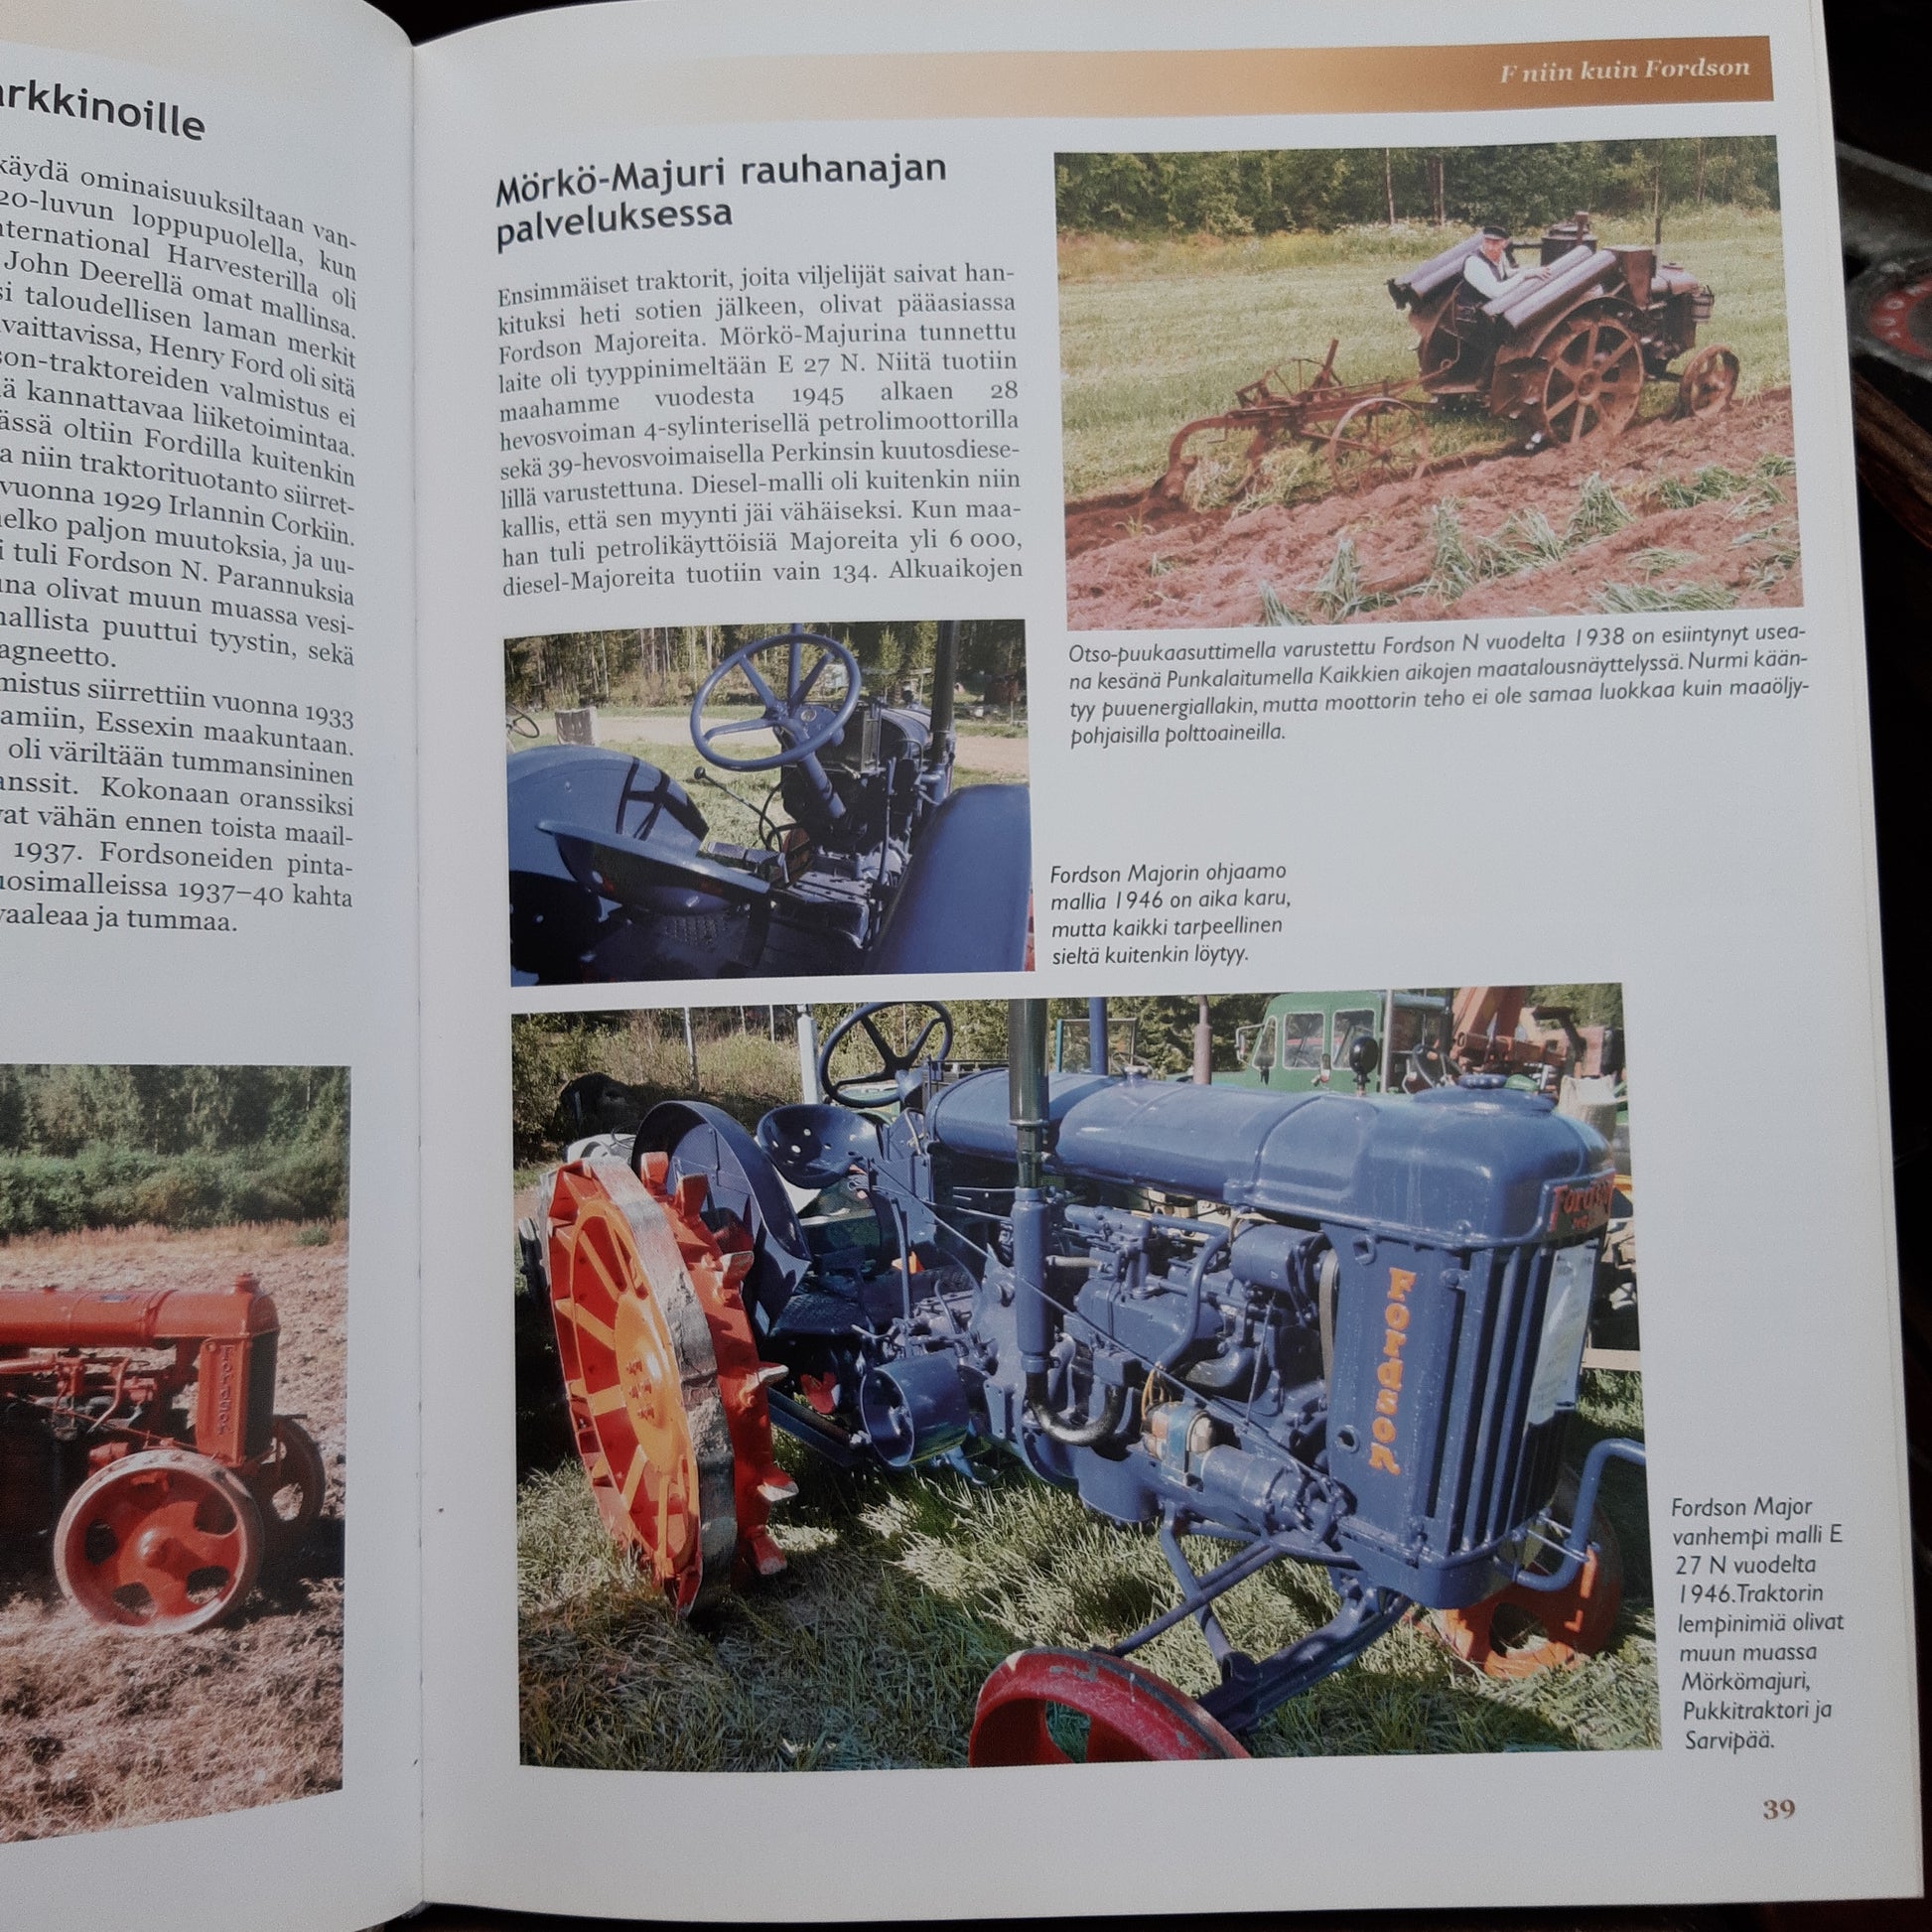 eilispäivän traktoreita - kurkistus vanhojen traktoreiden ihmeelliseen maailmaan